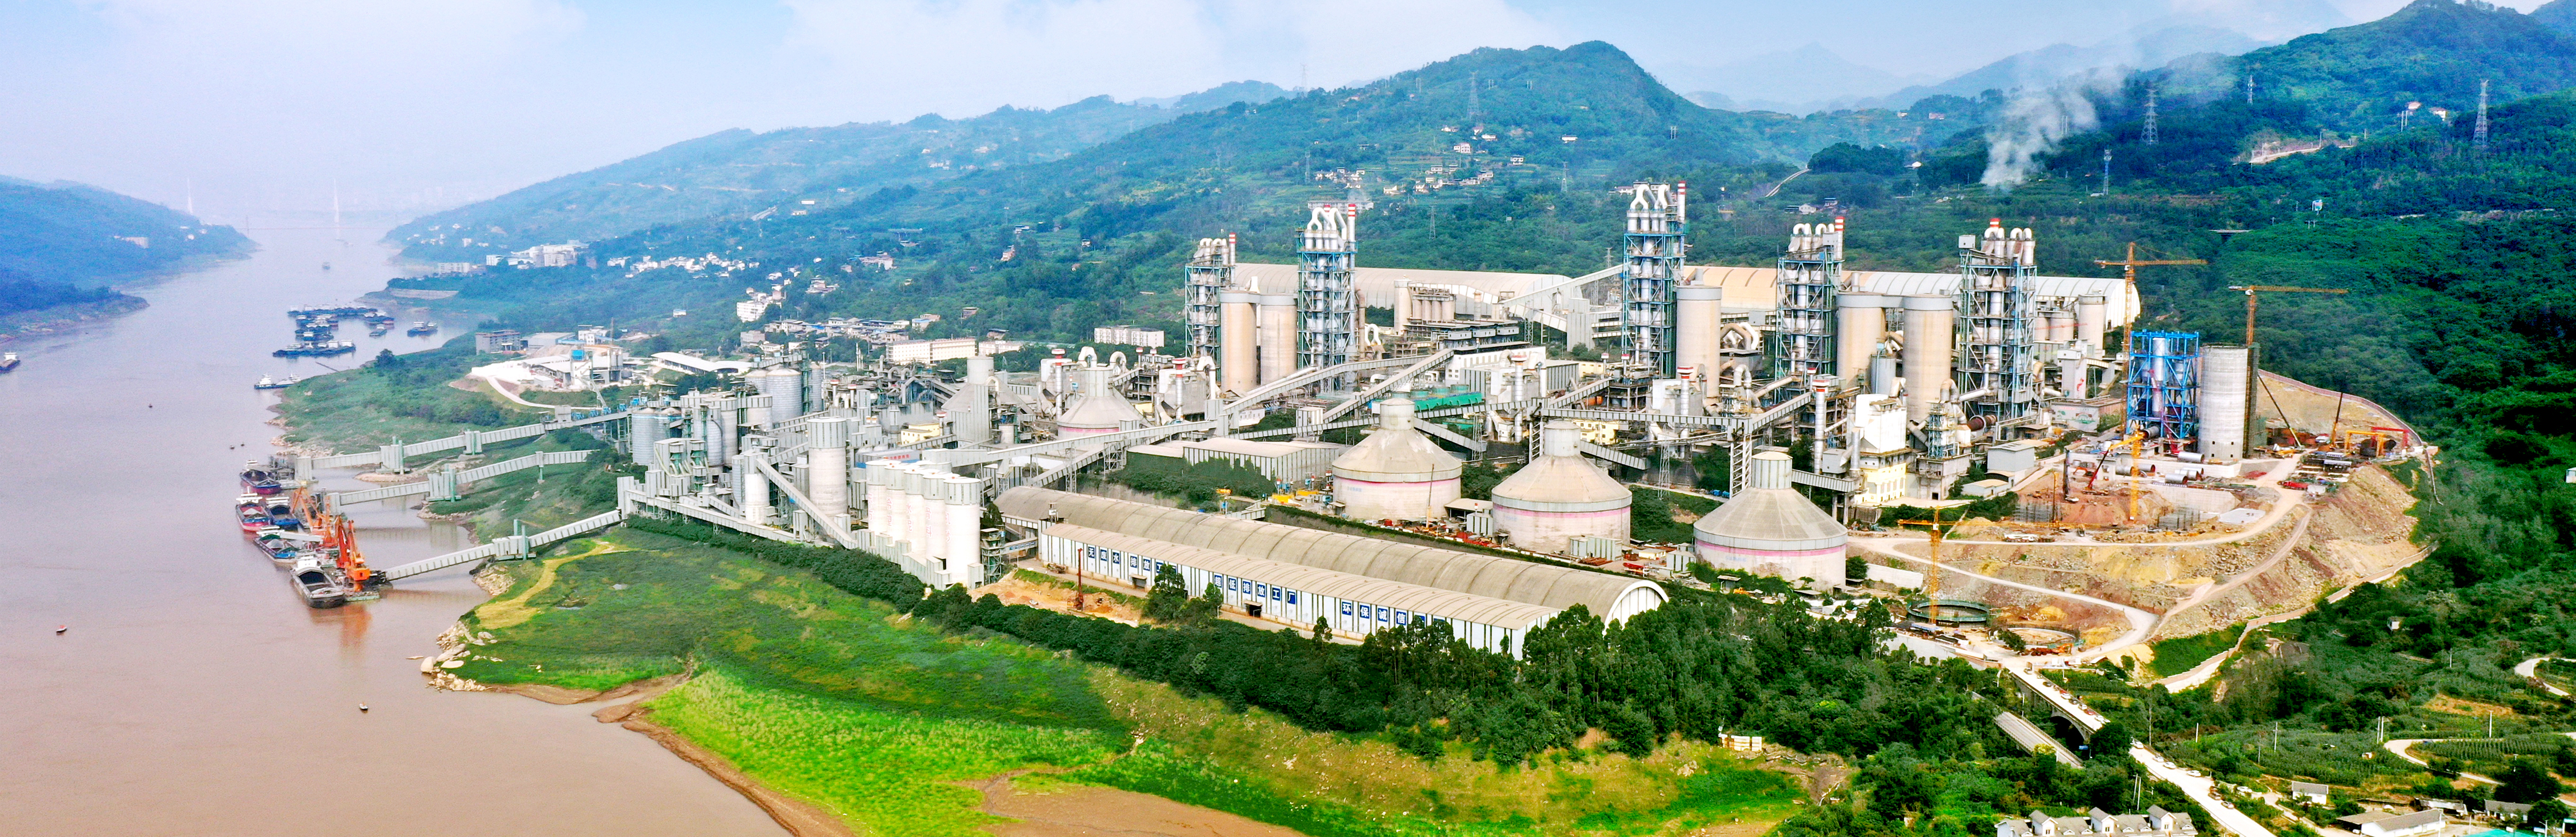 东方希望年产500万吨精品制砂楼机制砂生产工厂